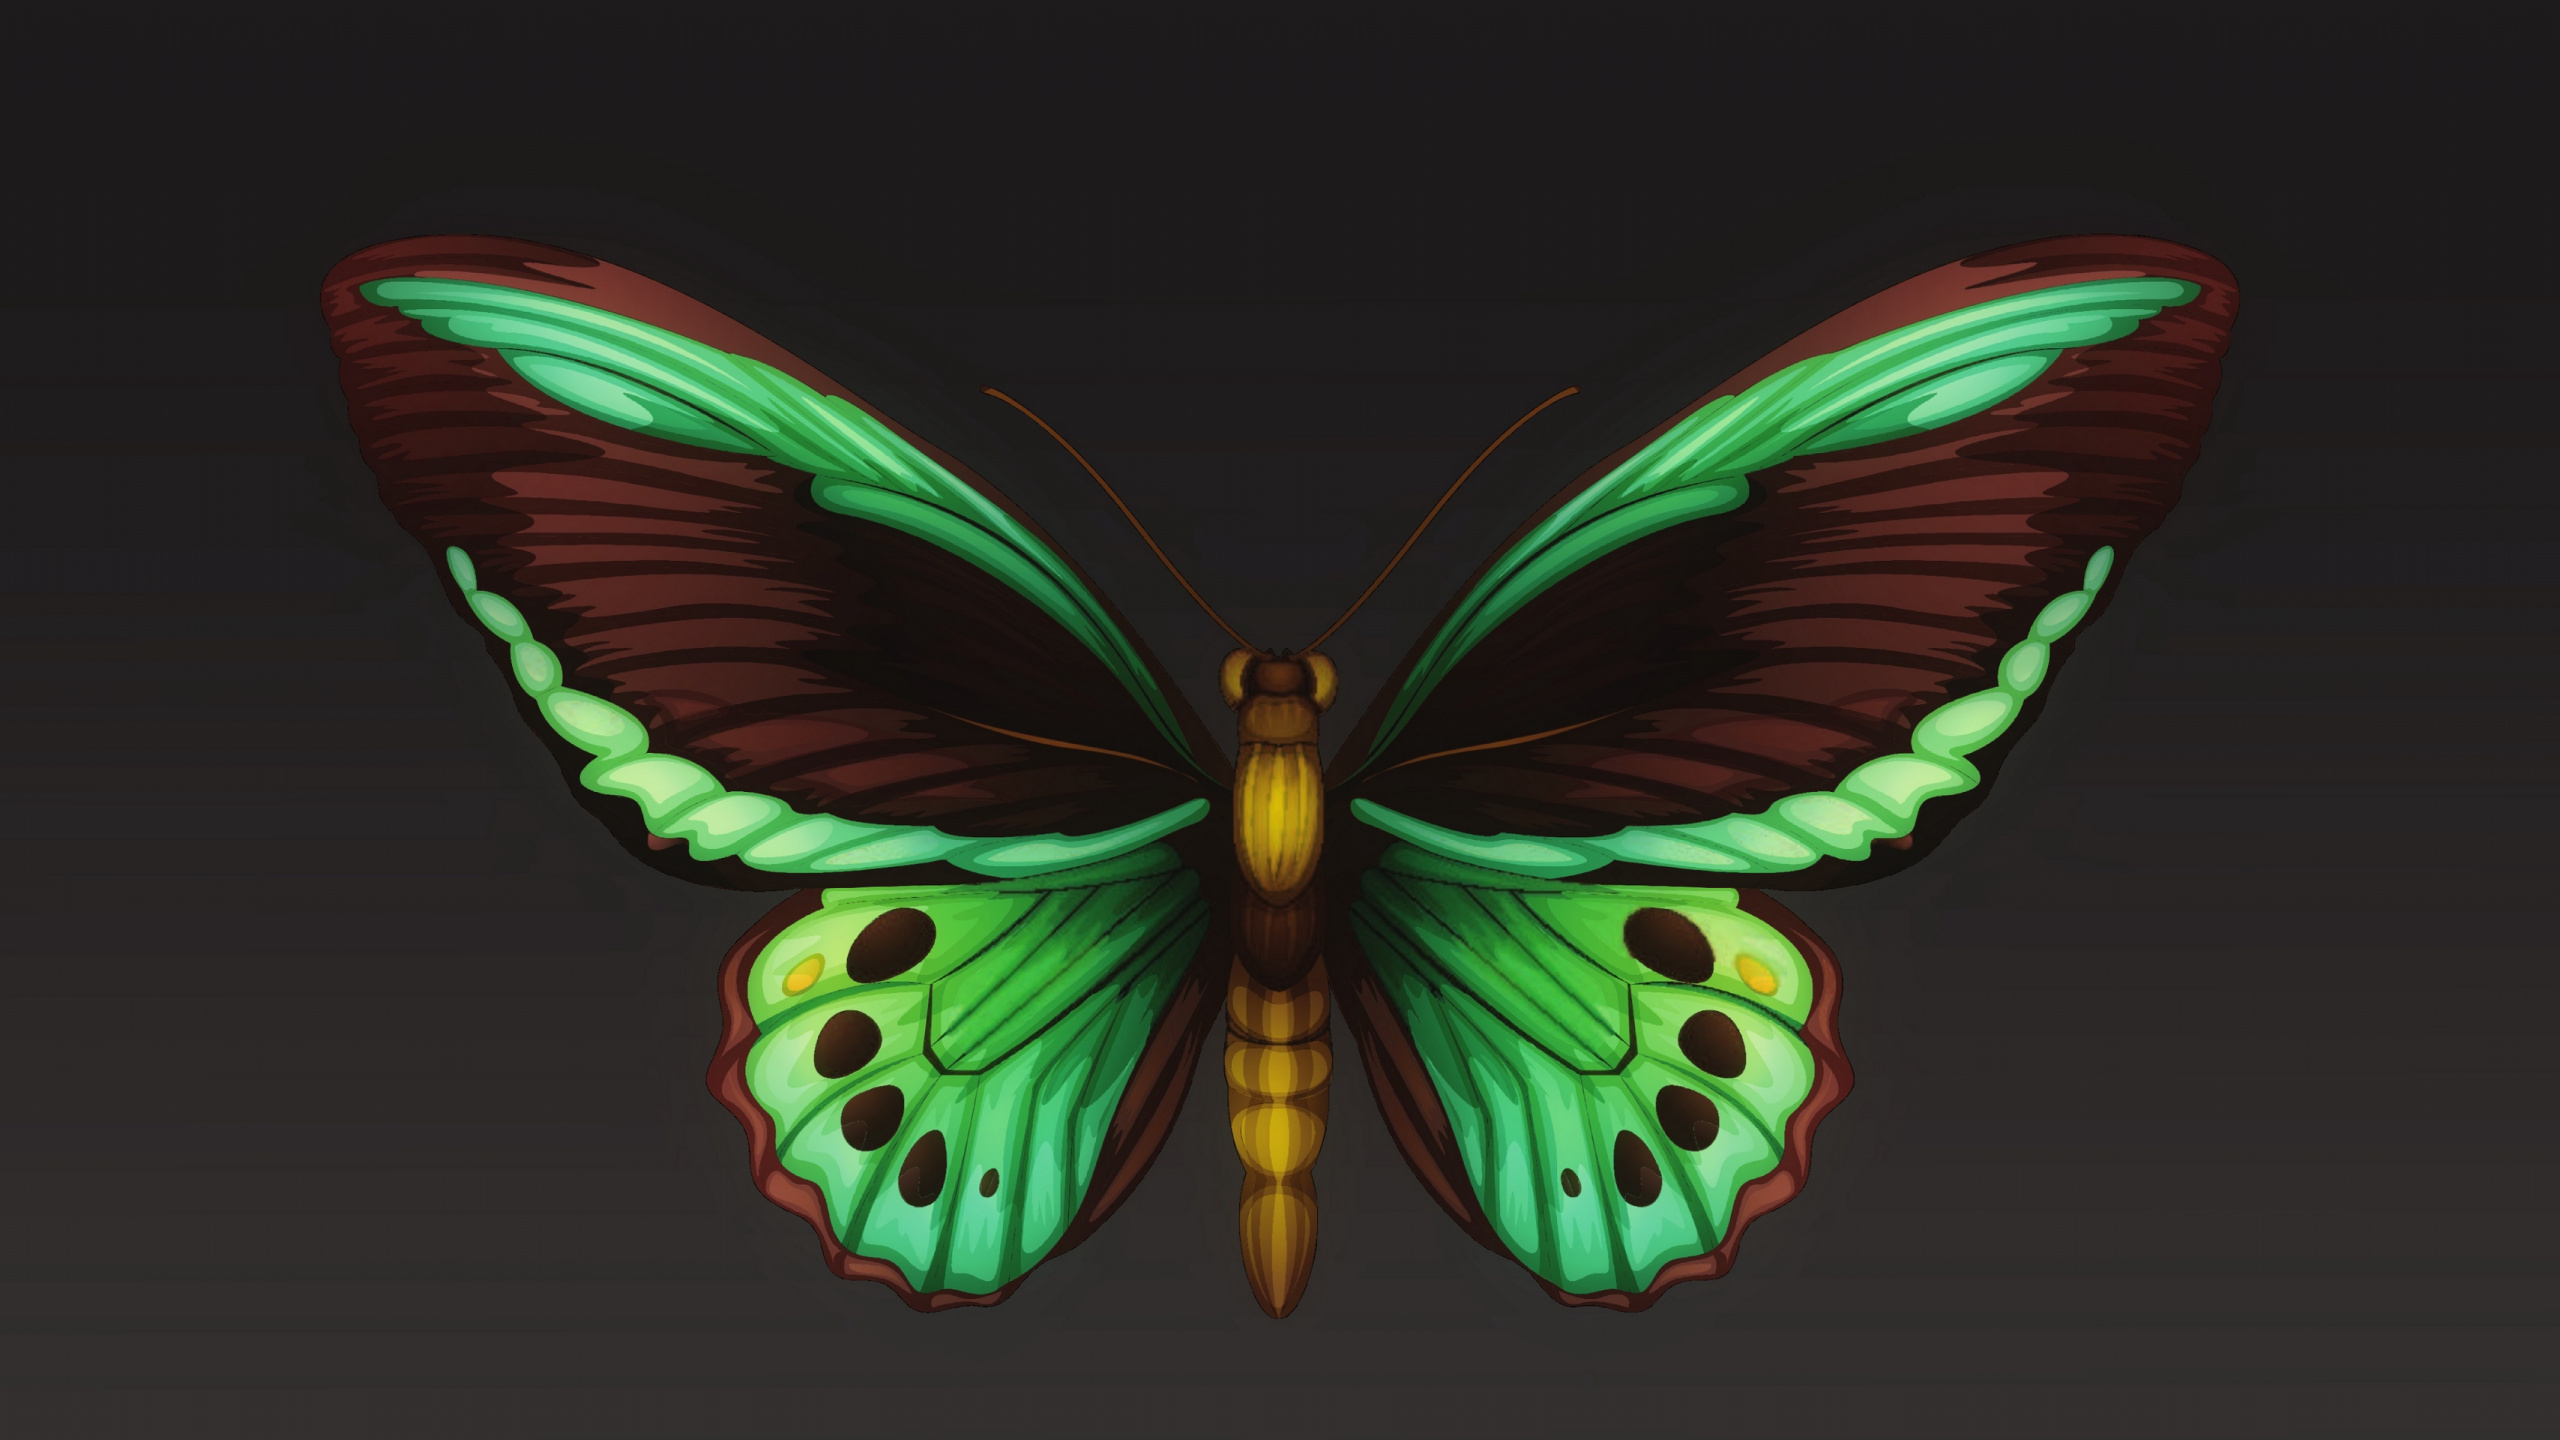 飞蛾和蝴蝶, 昆虫, 翼, 对称, 节肢动物 壁纸 2560x1440 允许